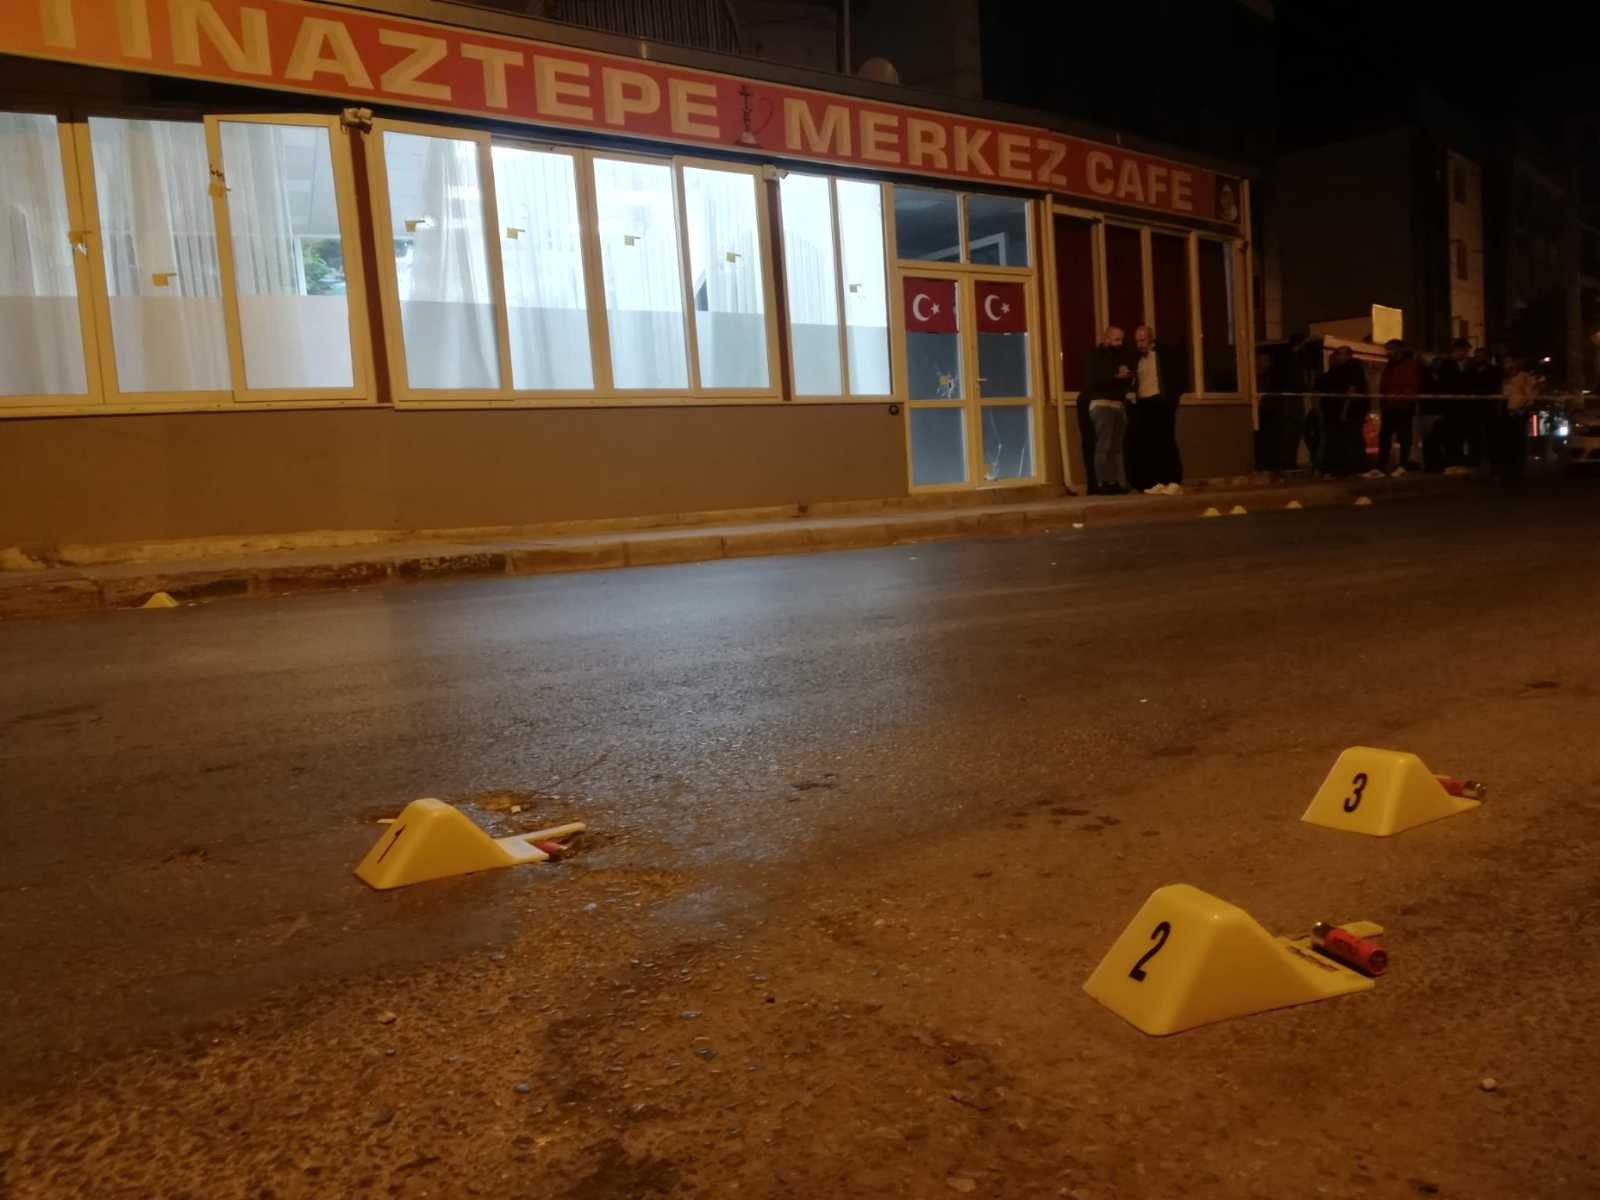 Kafeye ateş açan saldırganı bekçiler etkisiz hale getirdi #izmir